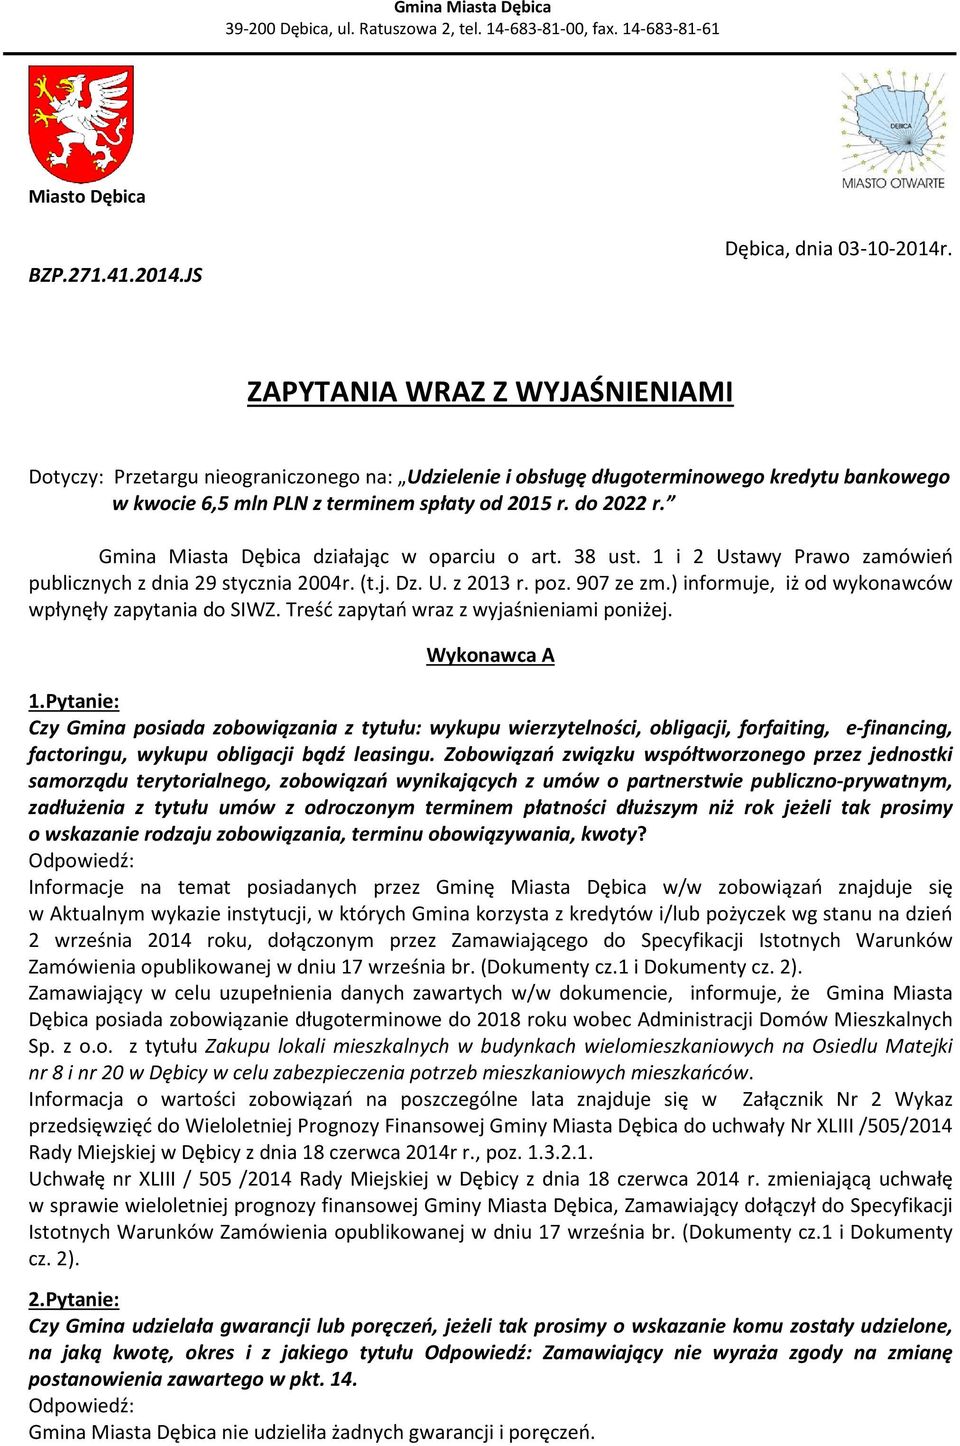 Gmina Miasta Dębica działając w oparciu o art. 38 ust. 1 i 2 Ustawy Prawo zamówień publicznych z dnia 29 stycznia 2004r. (t.j. Dz. U. z 2013 r. poz. 907 ze zm.